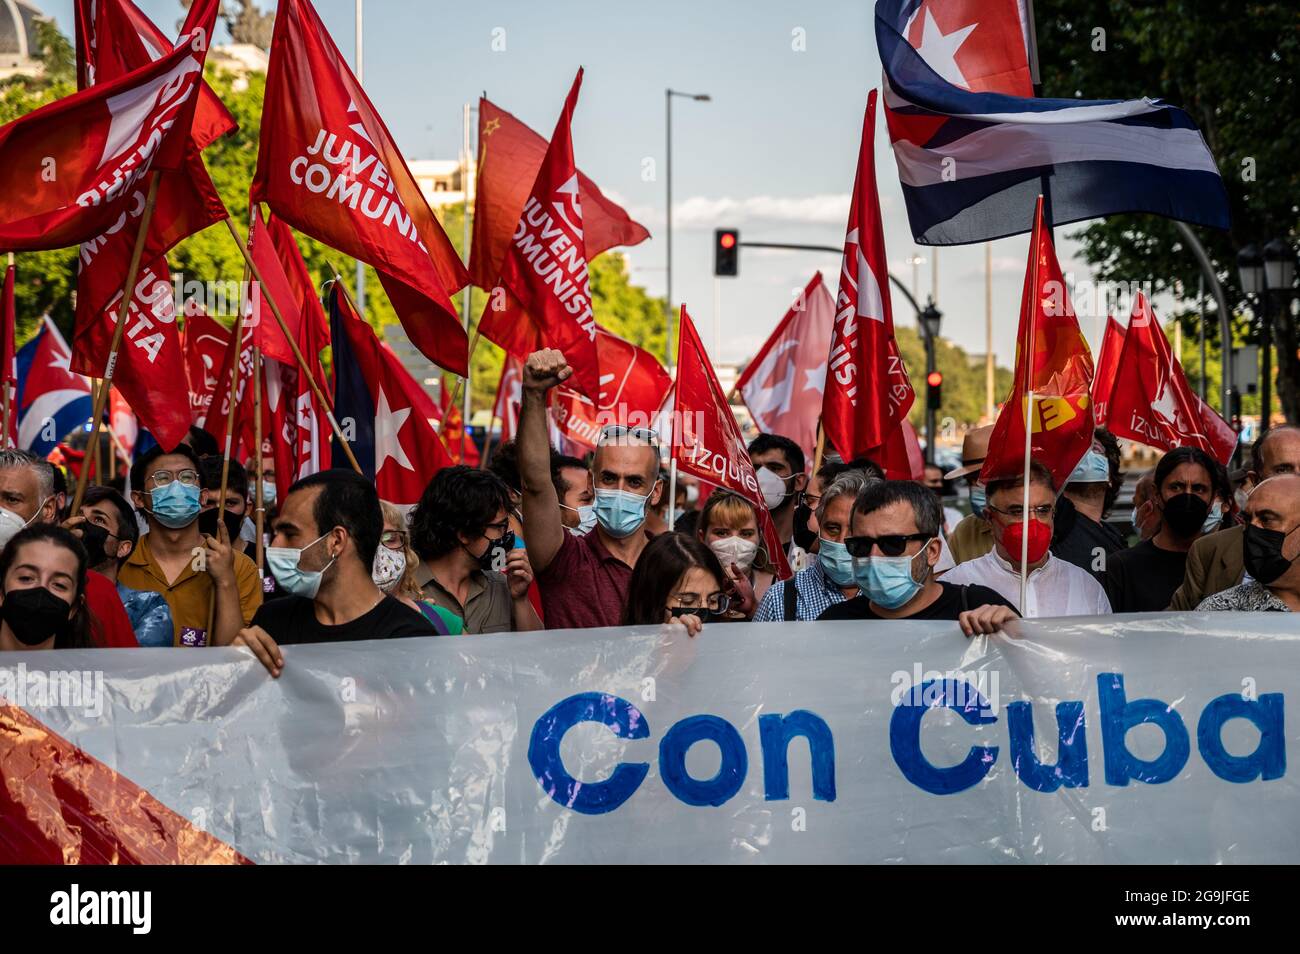 Madrid, Espagne. 26 juillet 2021. Des manifestants portant des drapeaux et des pancartes lors d'une manifestation contre l'embargo économique américain sur Cuba, coïncidant avec le 26 juillet, jour où la révolution cubaine a commencé en 1953, il y a 68 ans. Credit: Marcos del Mazo/Alay Live News Banque D'Images